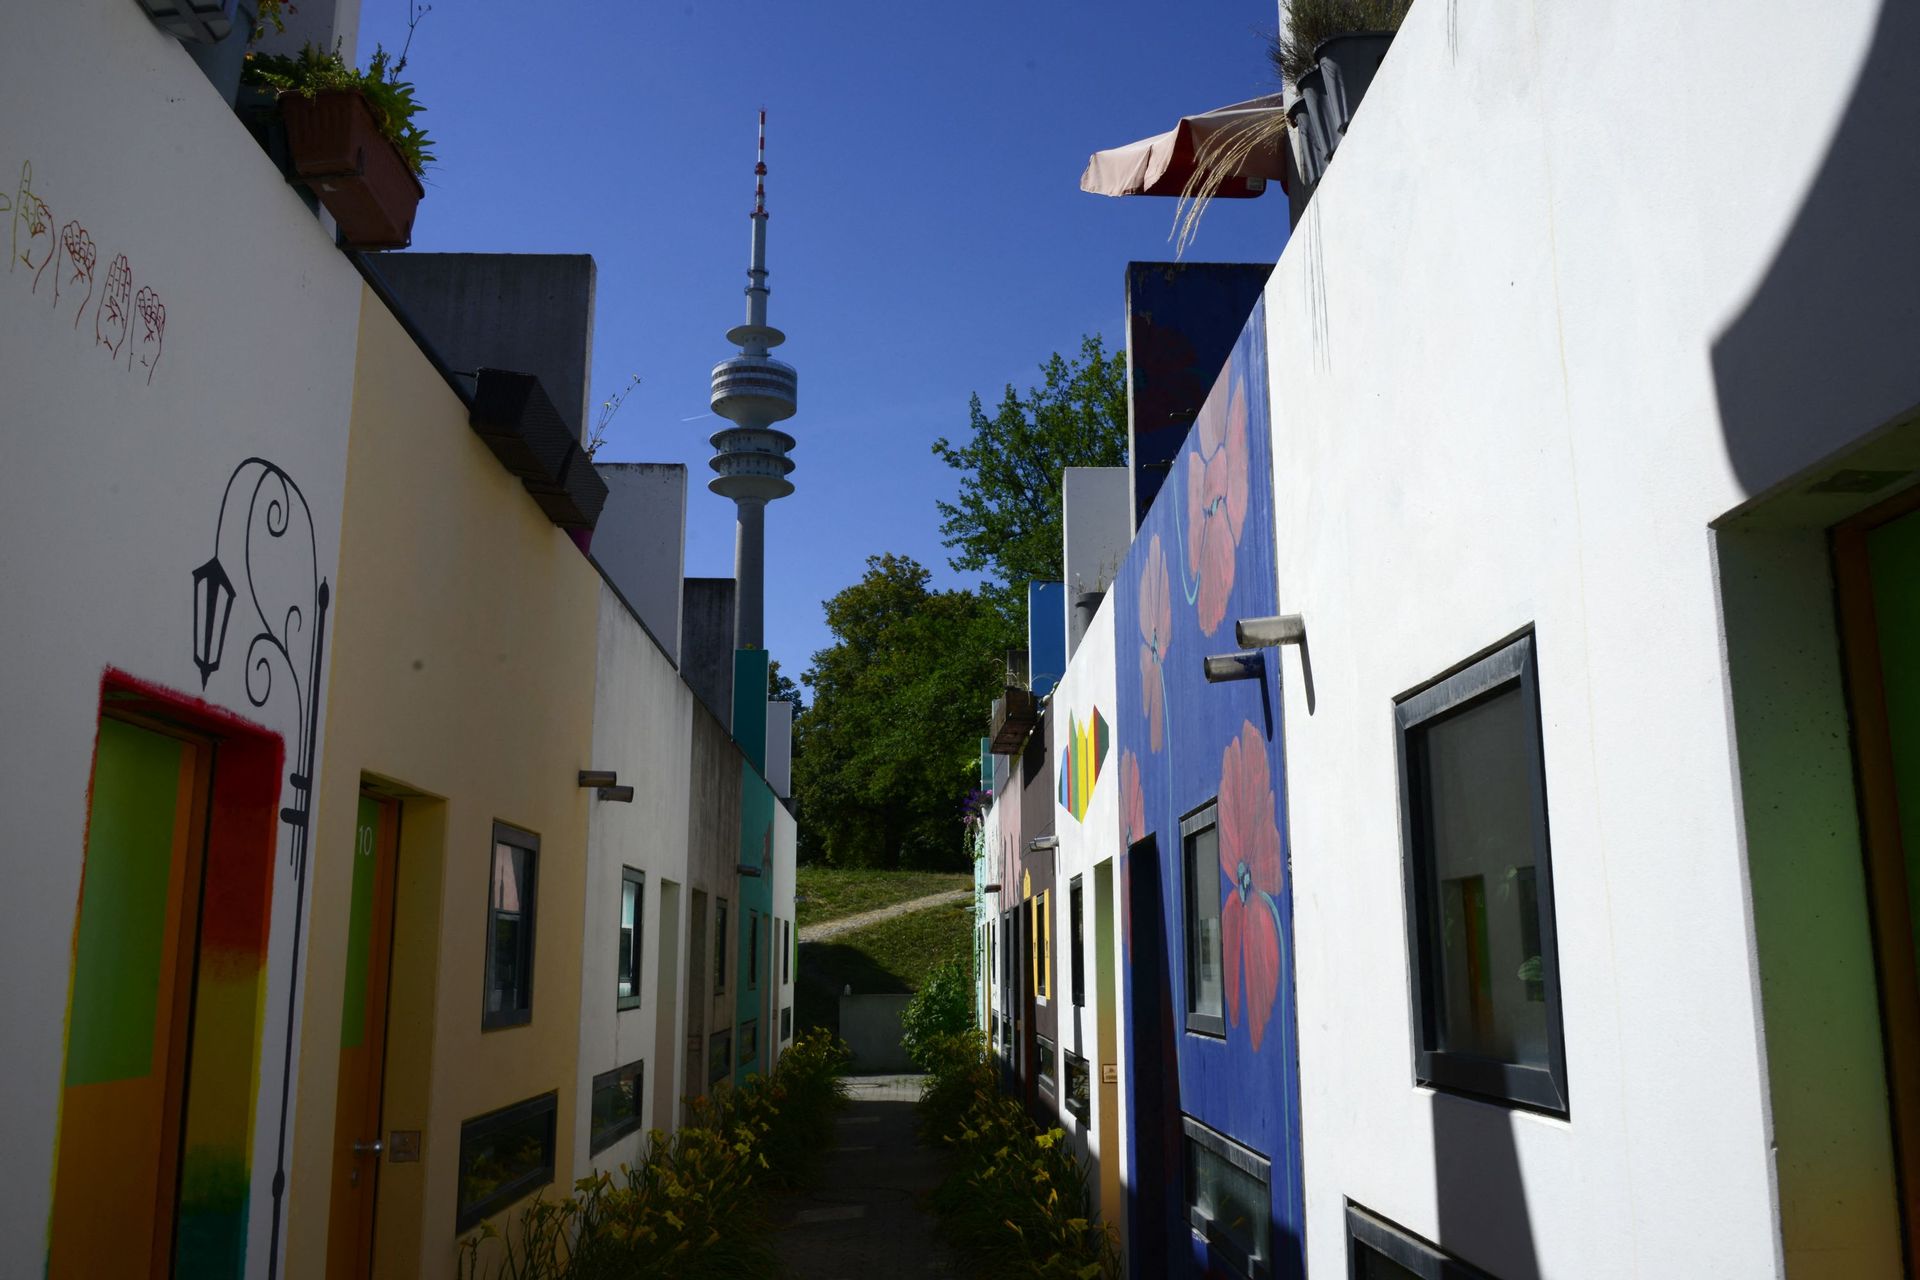 Des bungalows utilisés pour le logement des étudiants, aux façades colorées, sont photographiés à distance de marche de la Tour olympique (Olympiaturme), utilisée comme tour de télévision, au village olympique de Munich, dans le sud de l’Allemagne, le 17 